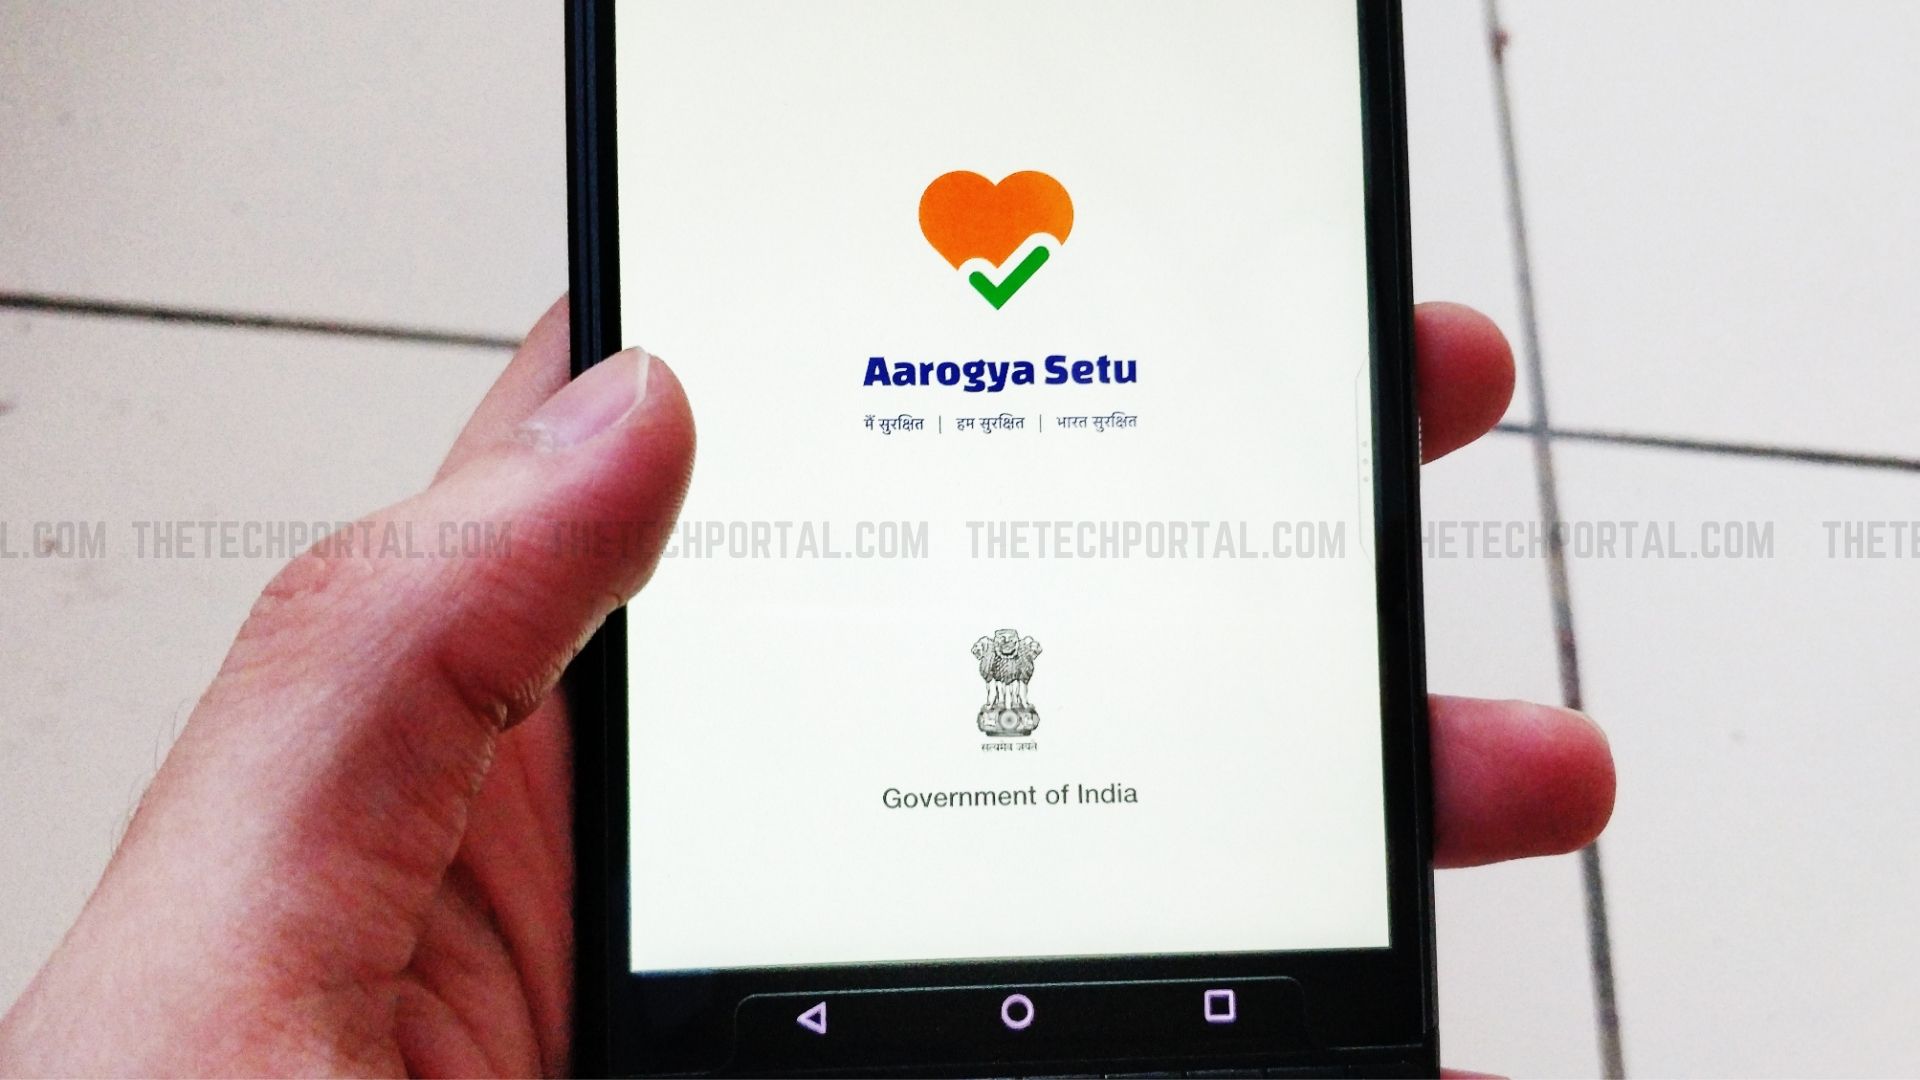 aarogya-setu-to-help-build-database-of-eligible-plasma-donors-in-india